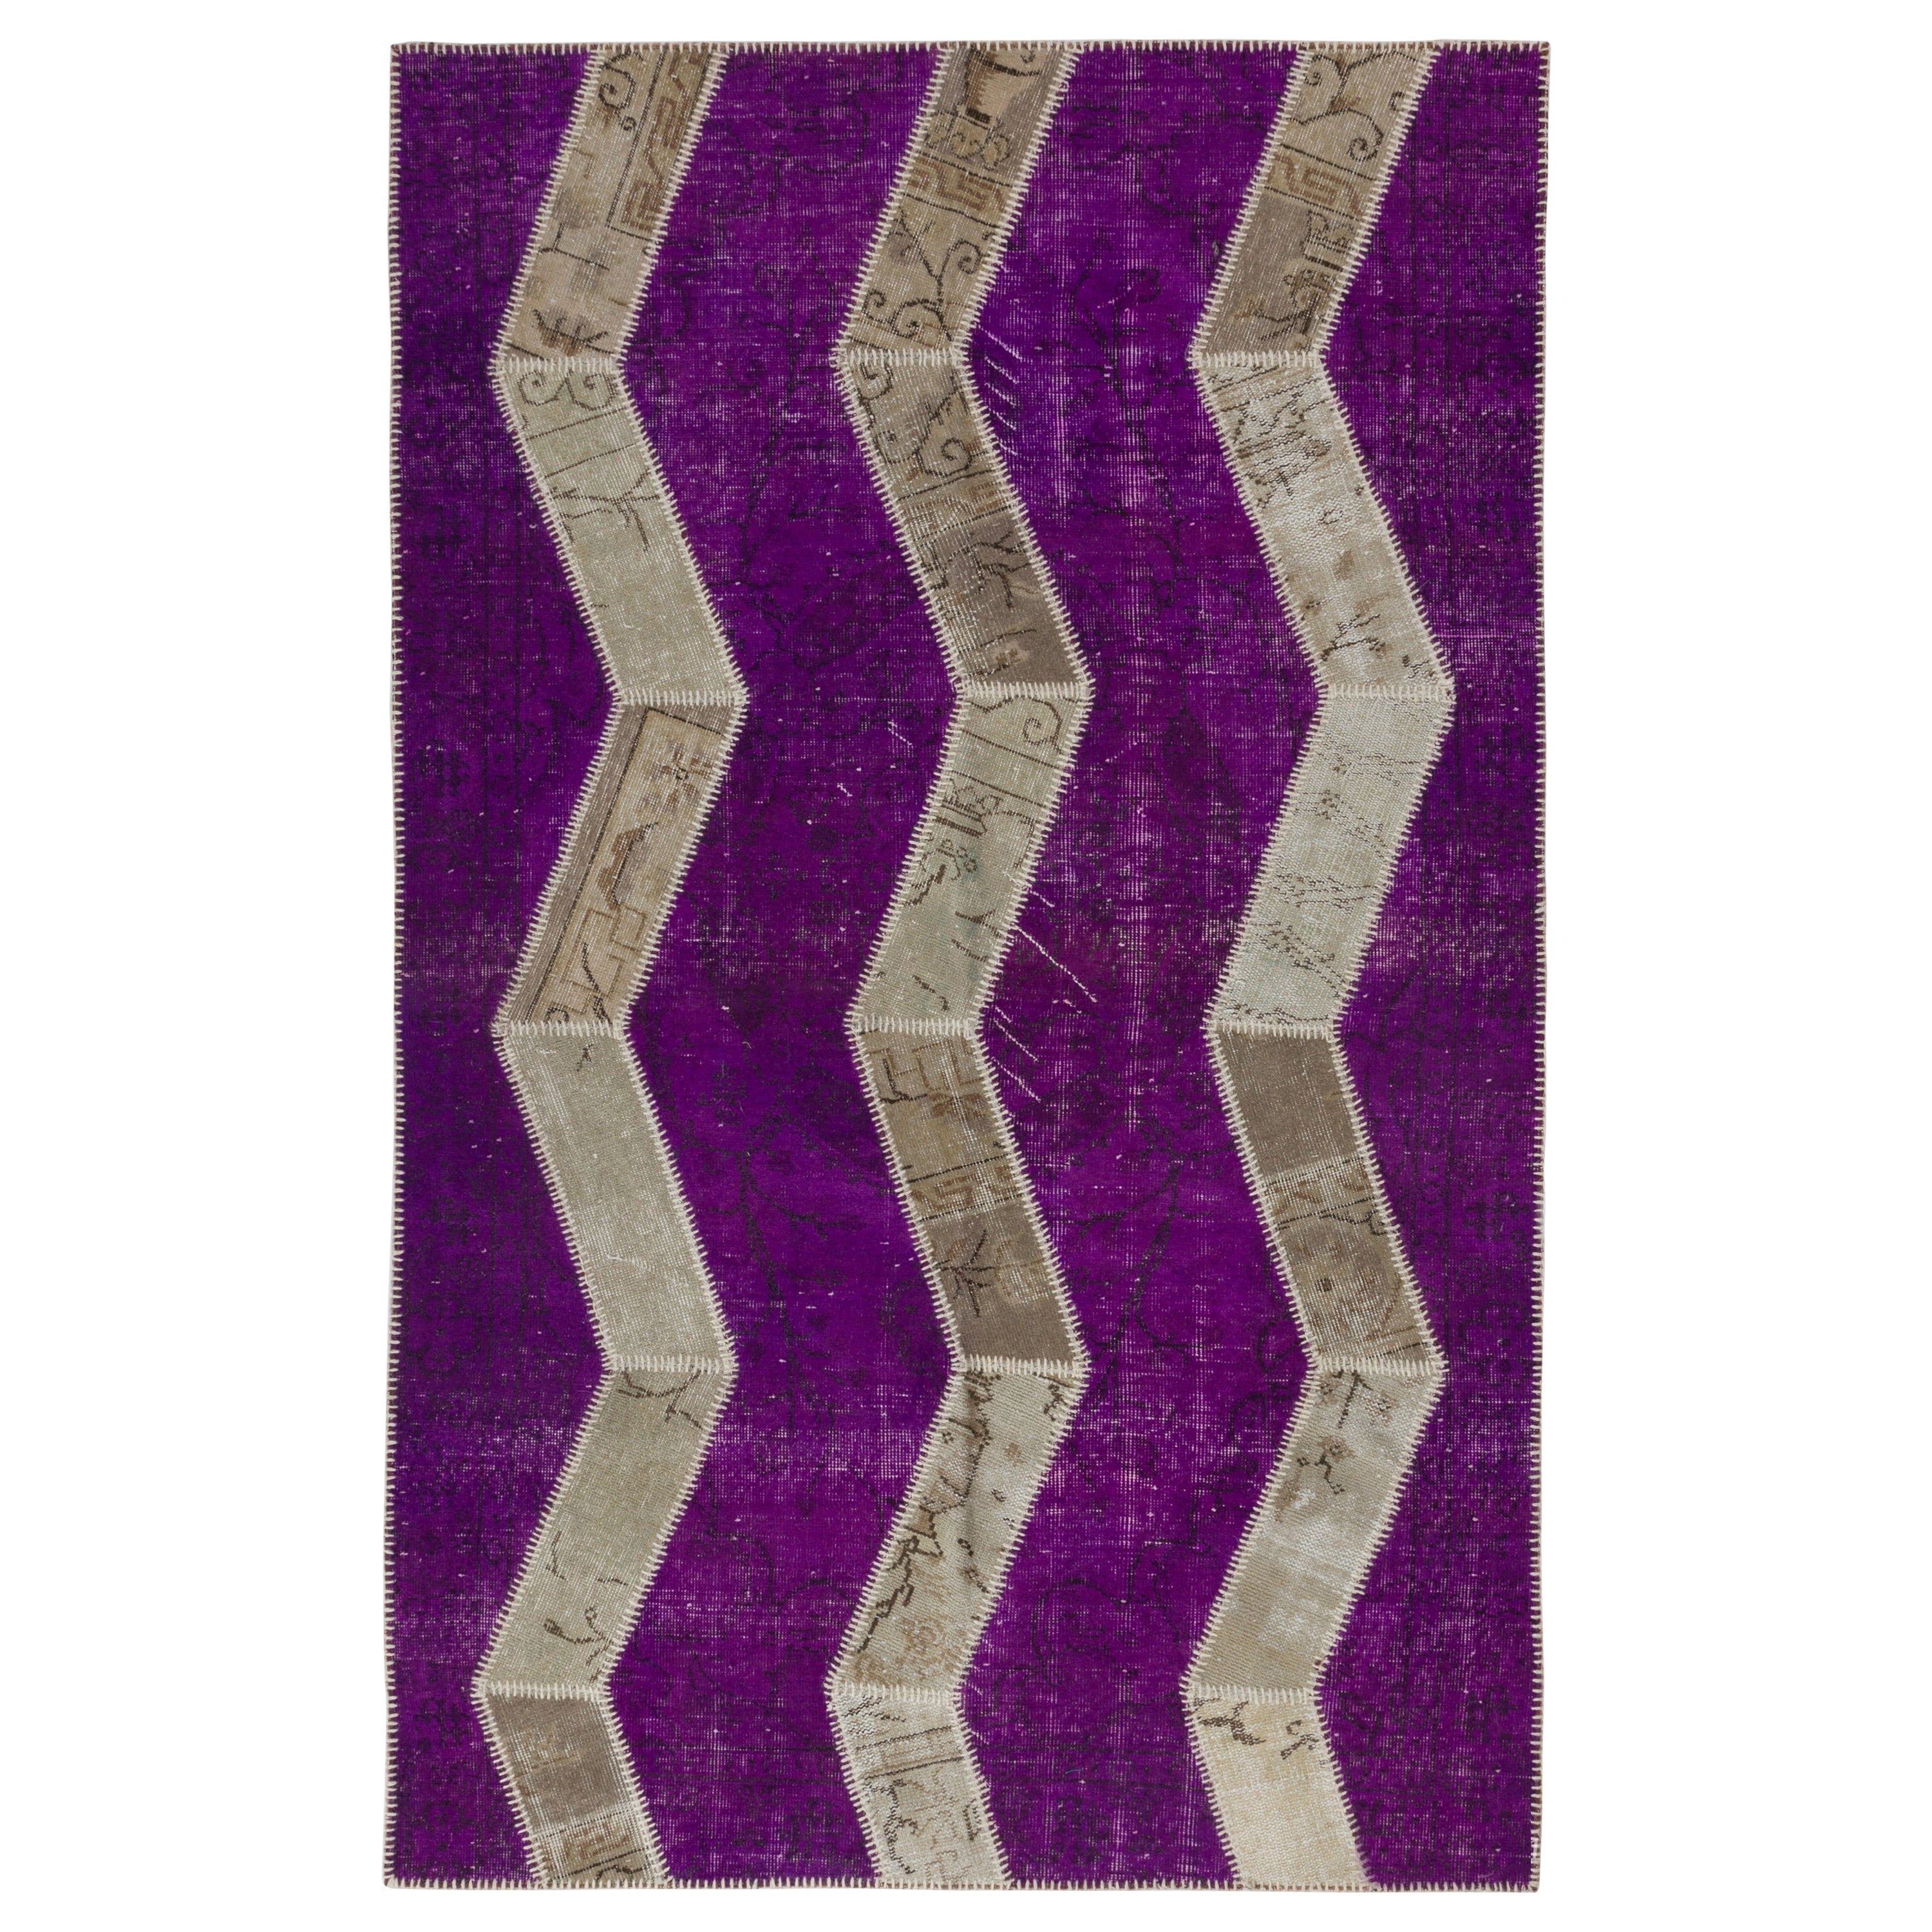 Zig Zag Design Patchwork Rug, Purple, Beige & Sand Colors. Custom Modern Carpet For Sale